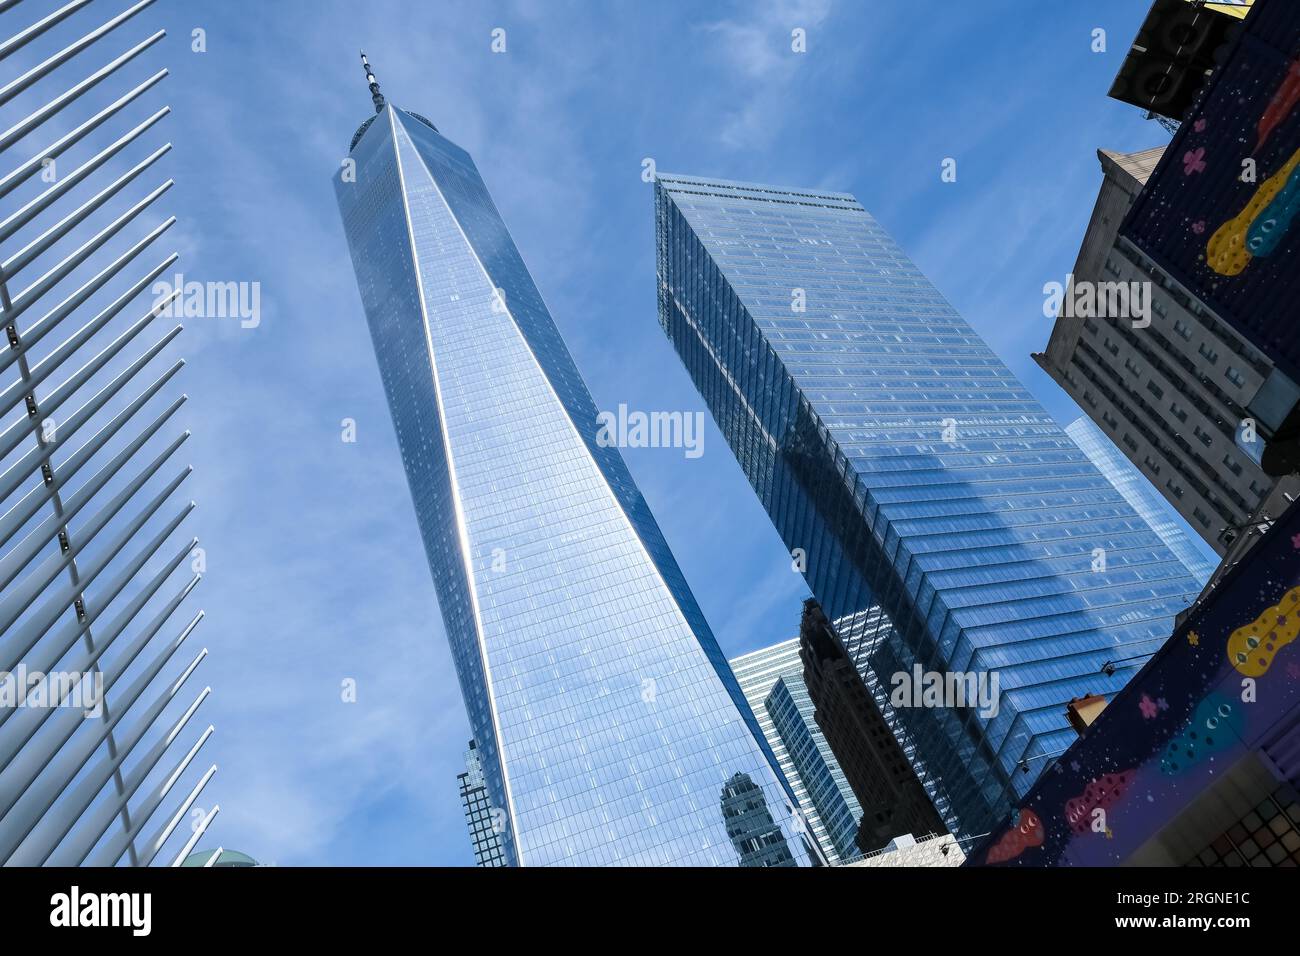 Dettaglio architettonico del World Trade Center (WTC), un complesso di edifici nel quartiere Lower Manhattan di New York City, Stati Uniti Foto Stock